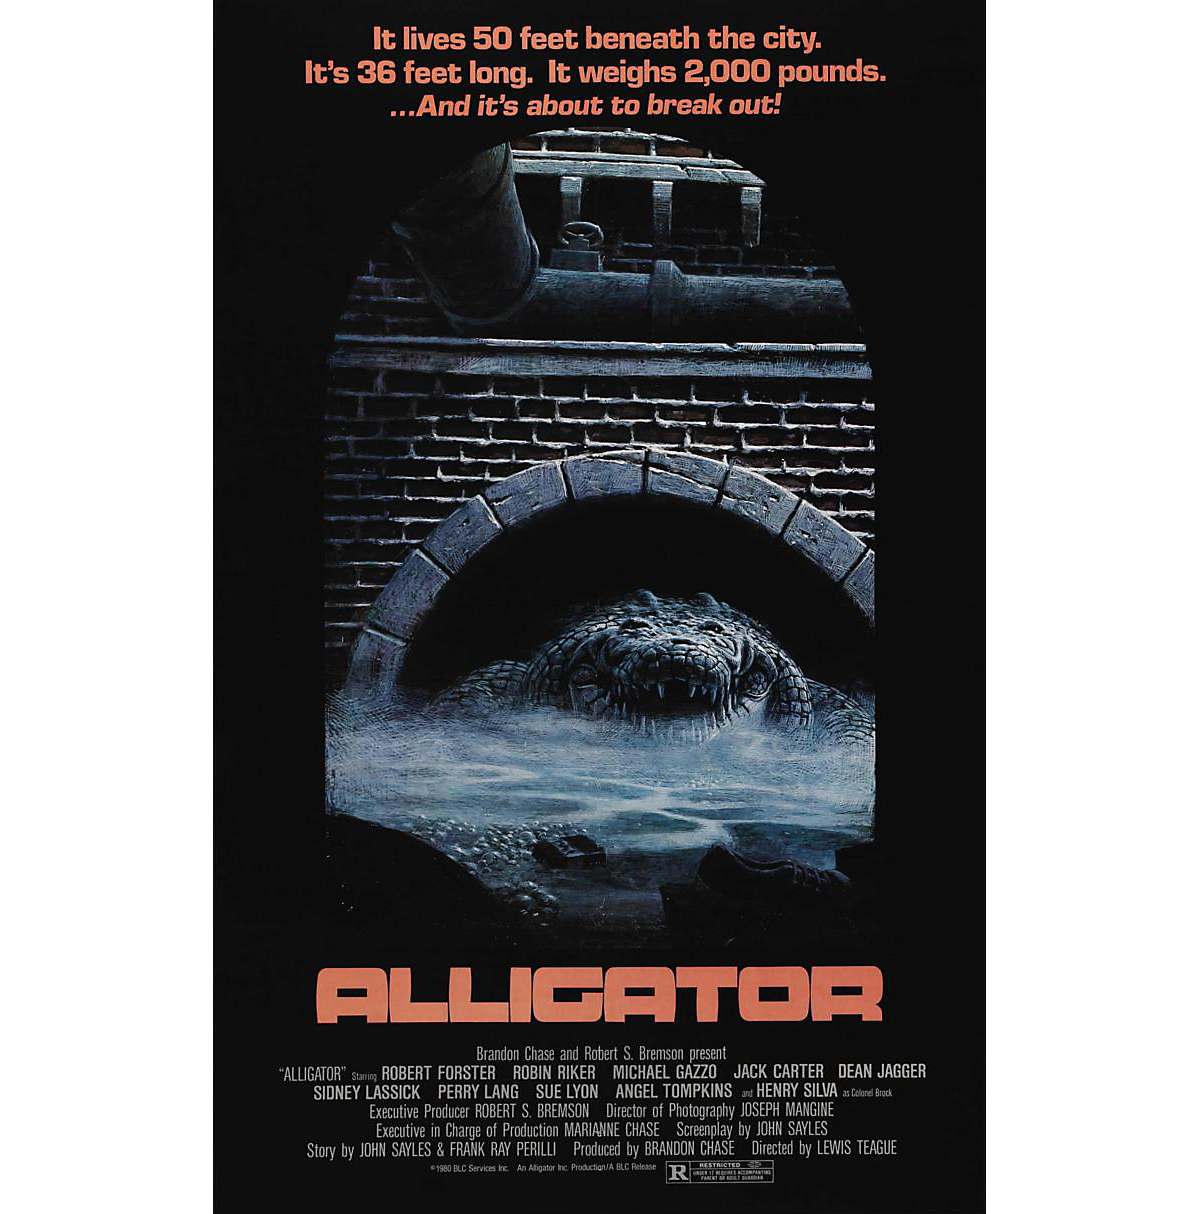 Alligator movie poster